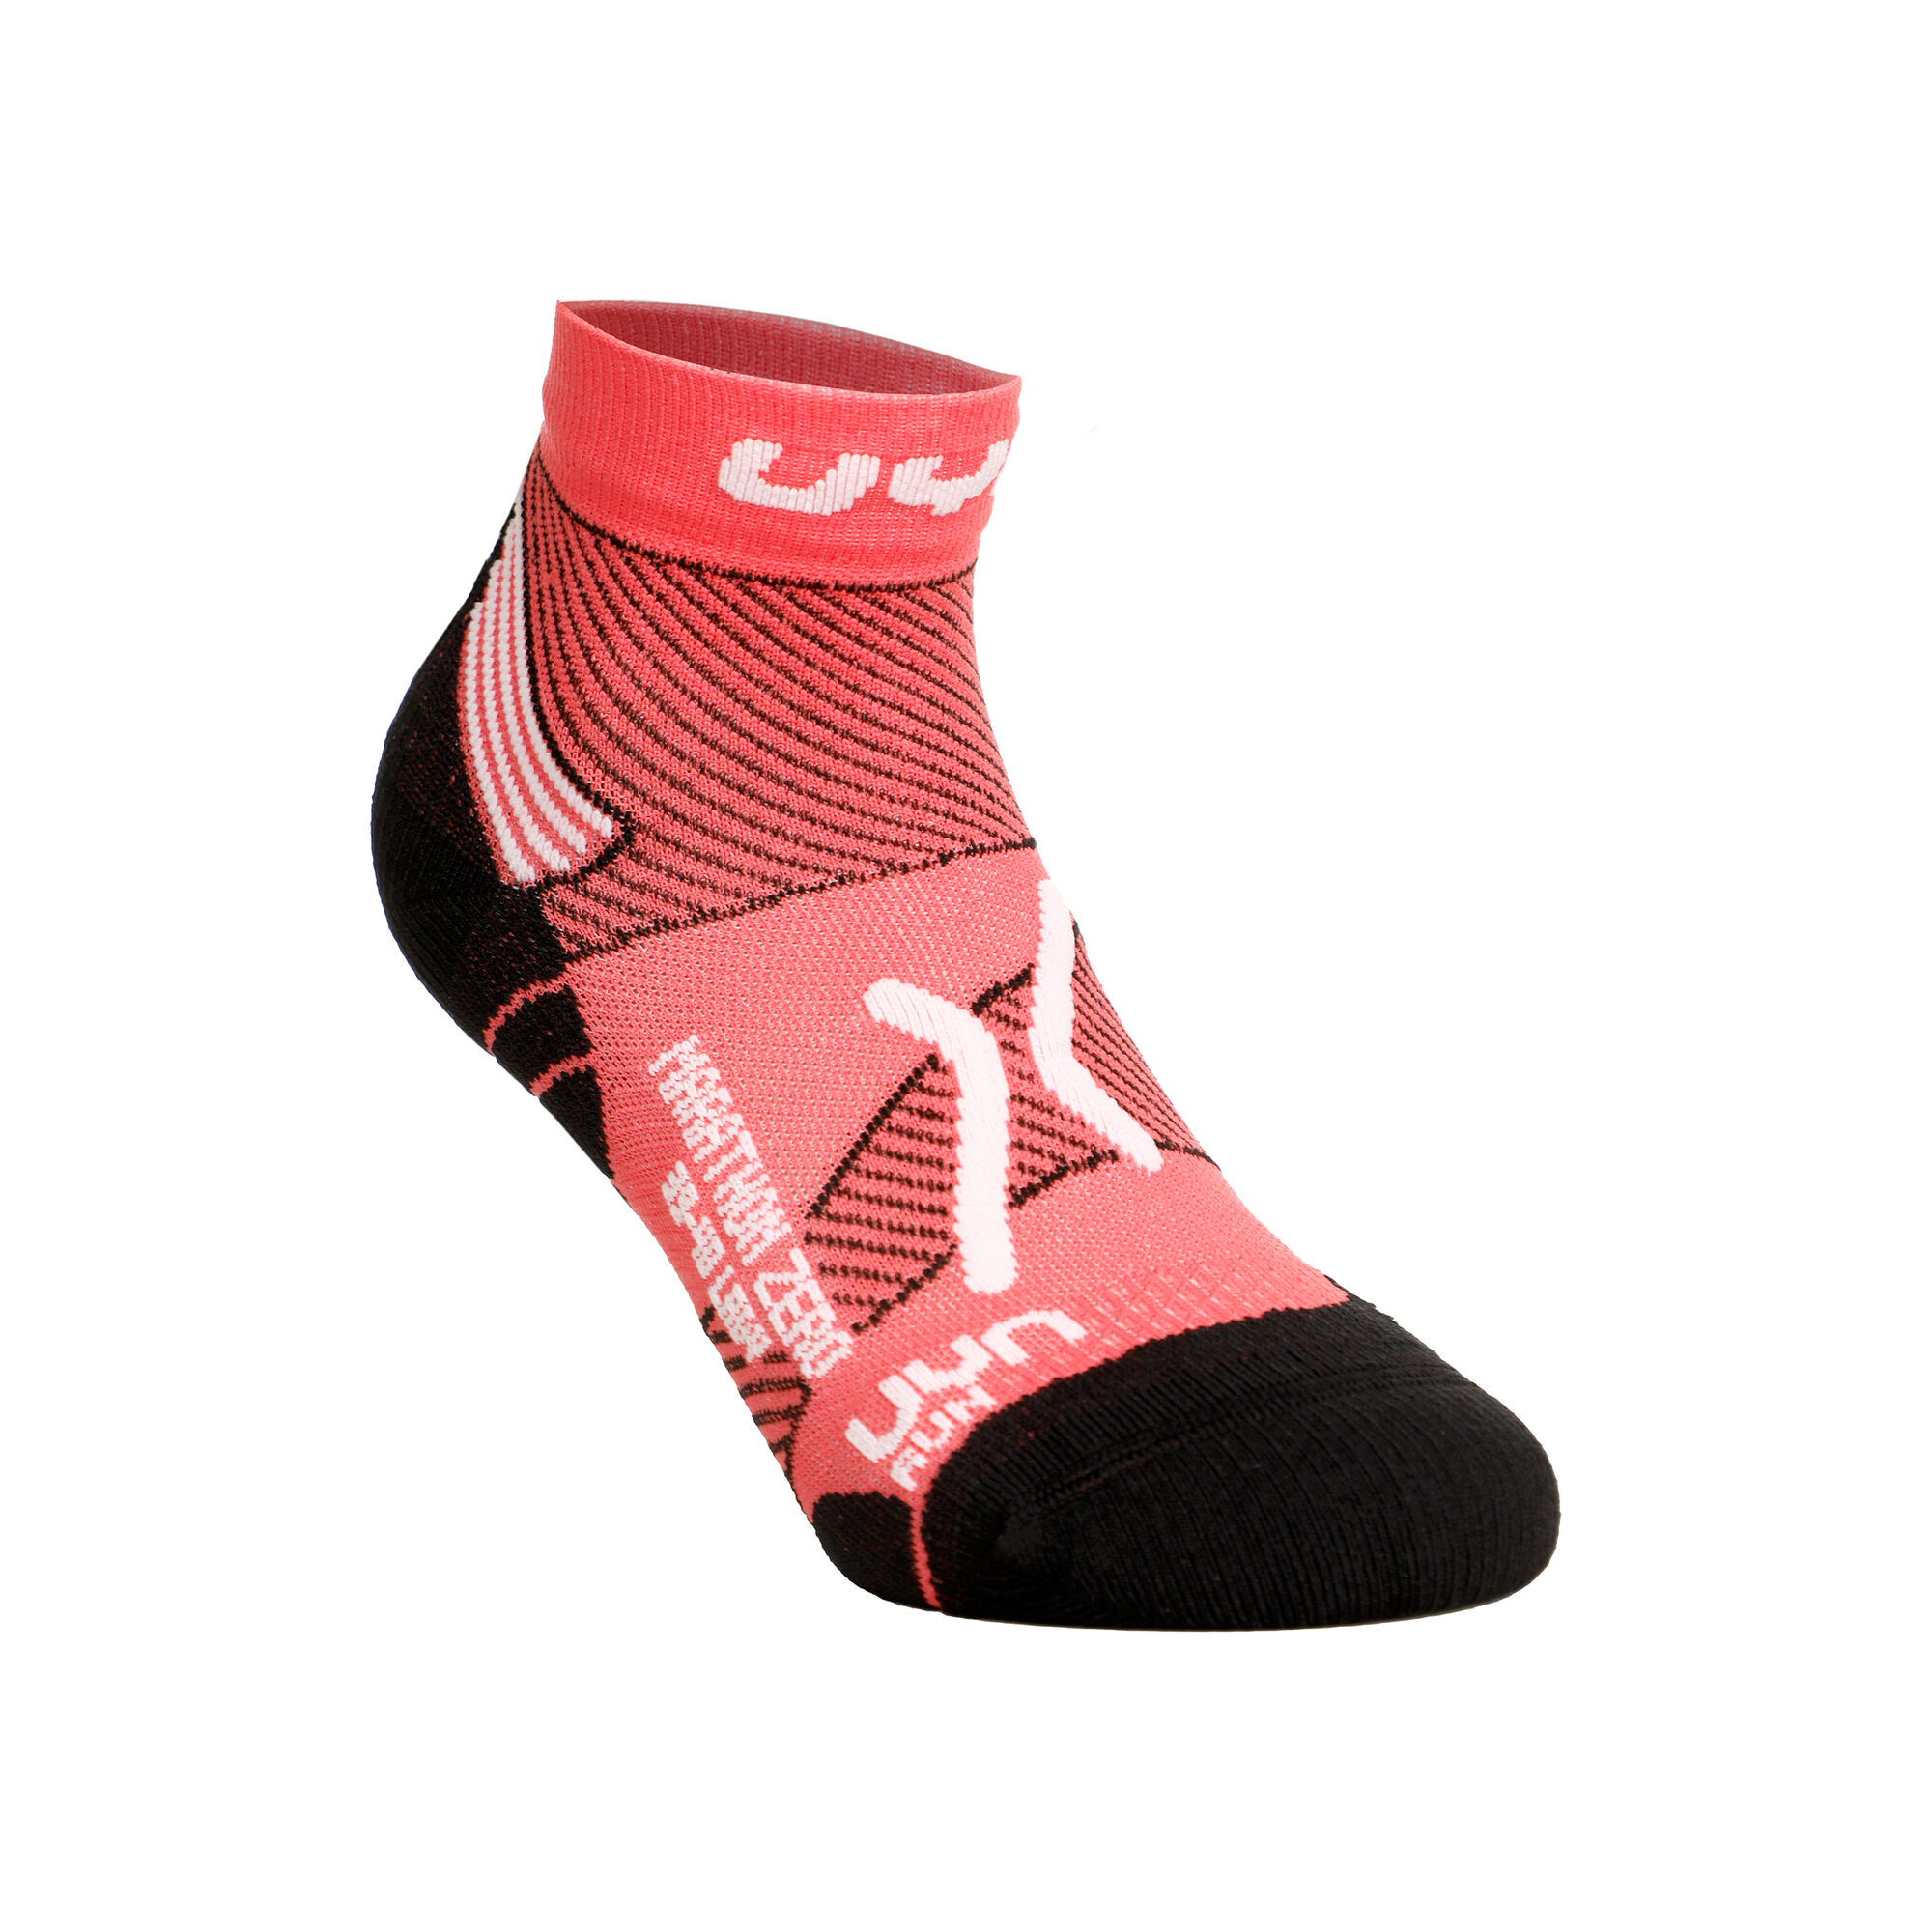 Buy UYN Marathon Zero Running Socks Women Pink, White online